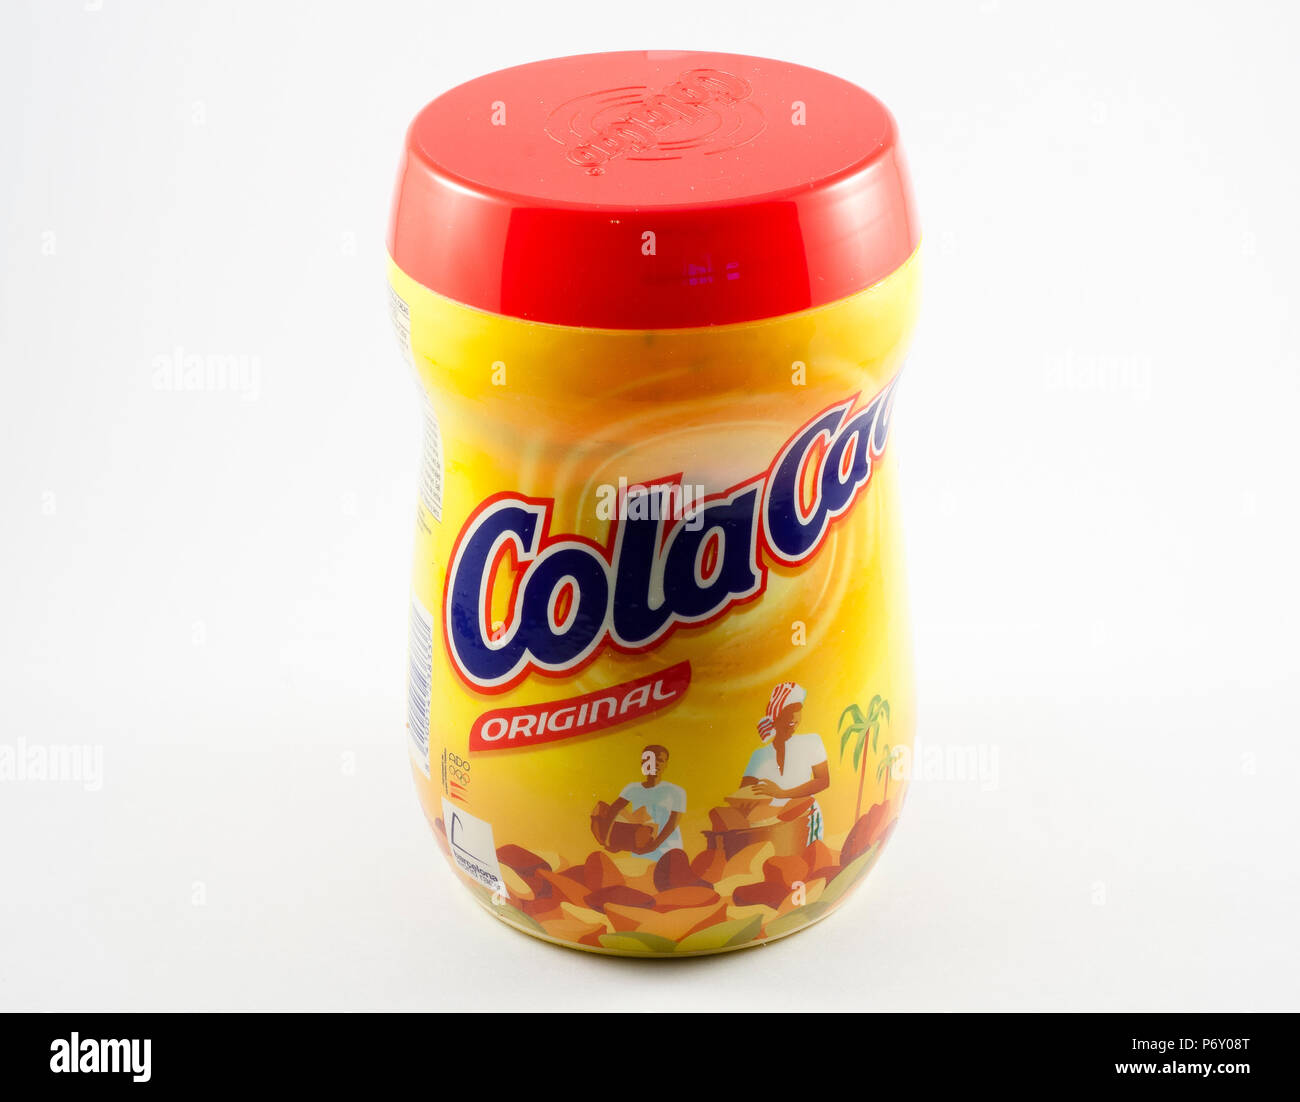 Colacao - cola cao